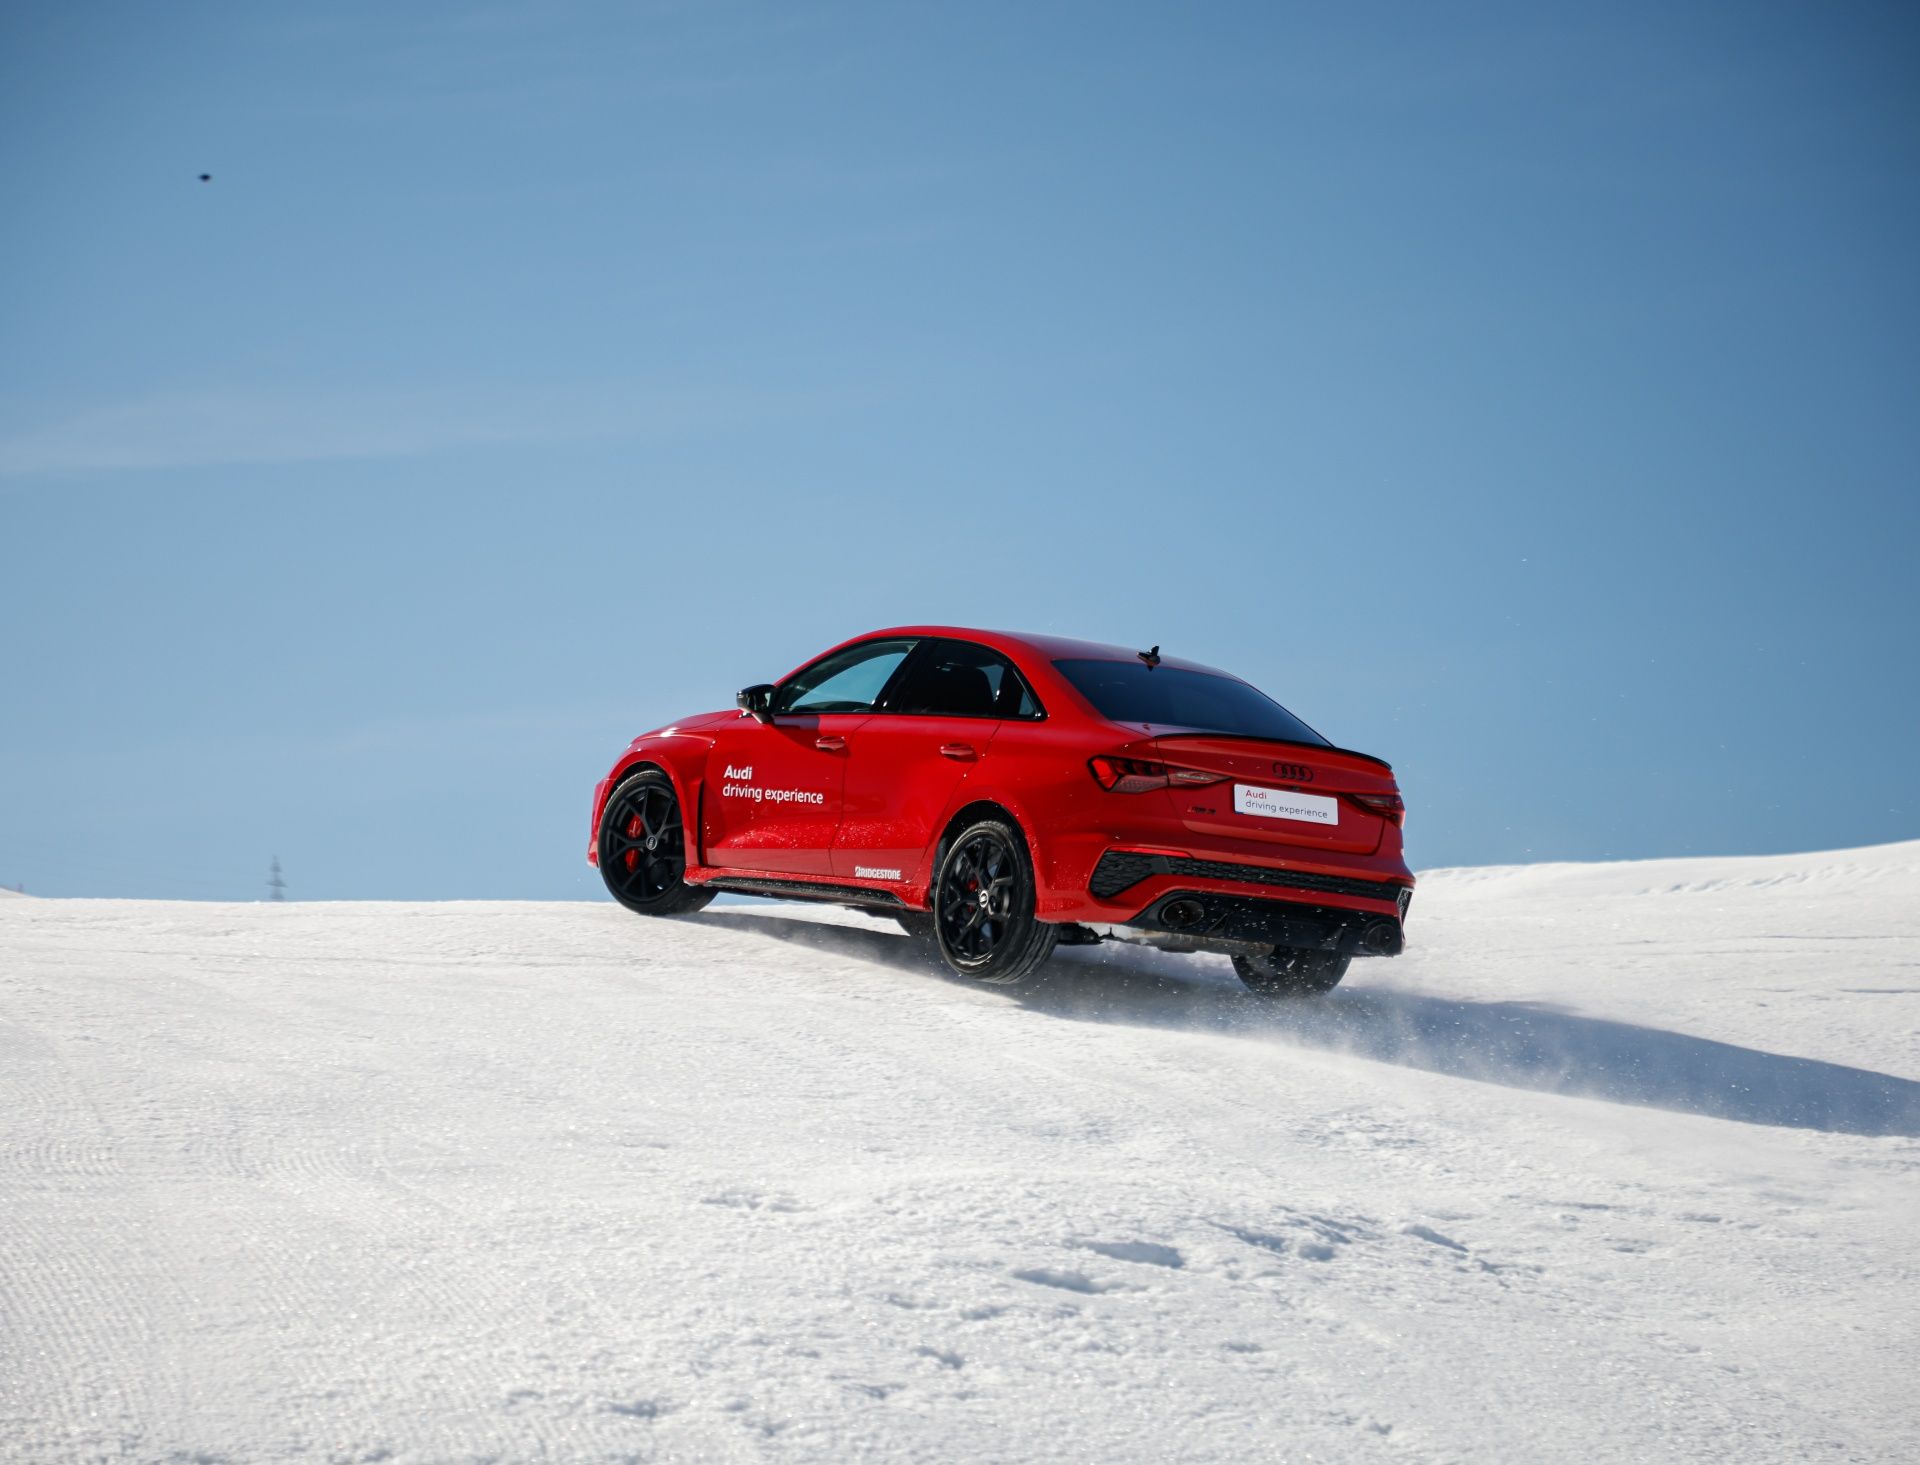 Está tu Audi preparado para estrenar los esquís? - Audi Center Zaragoza